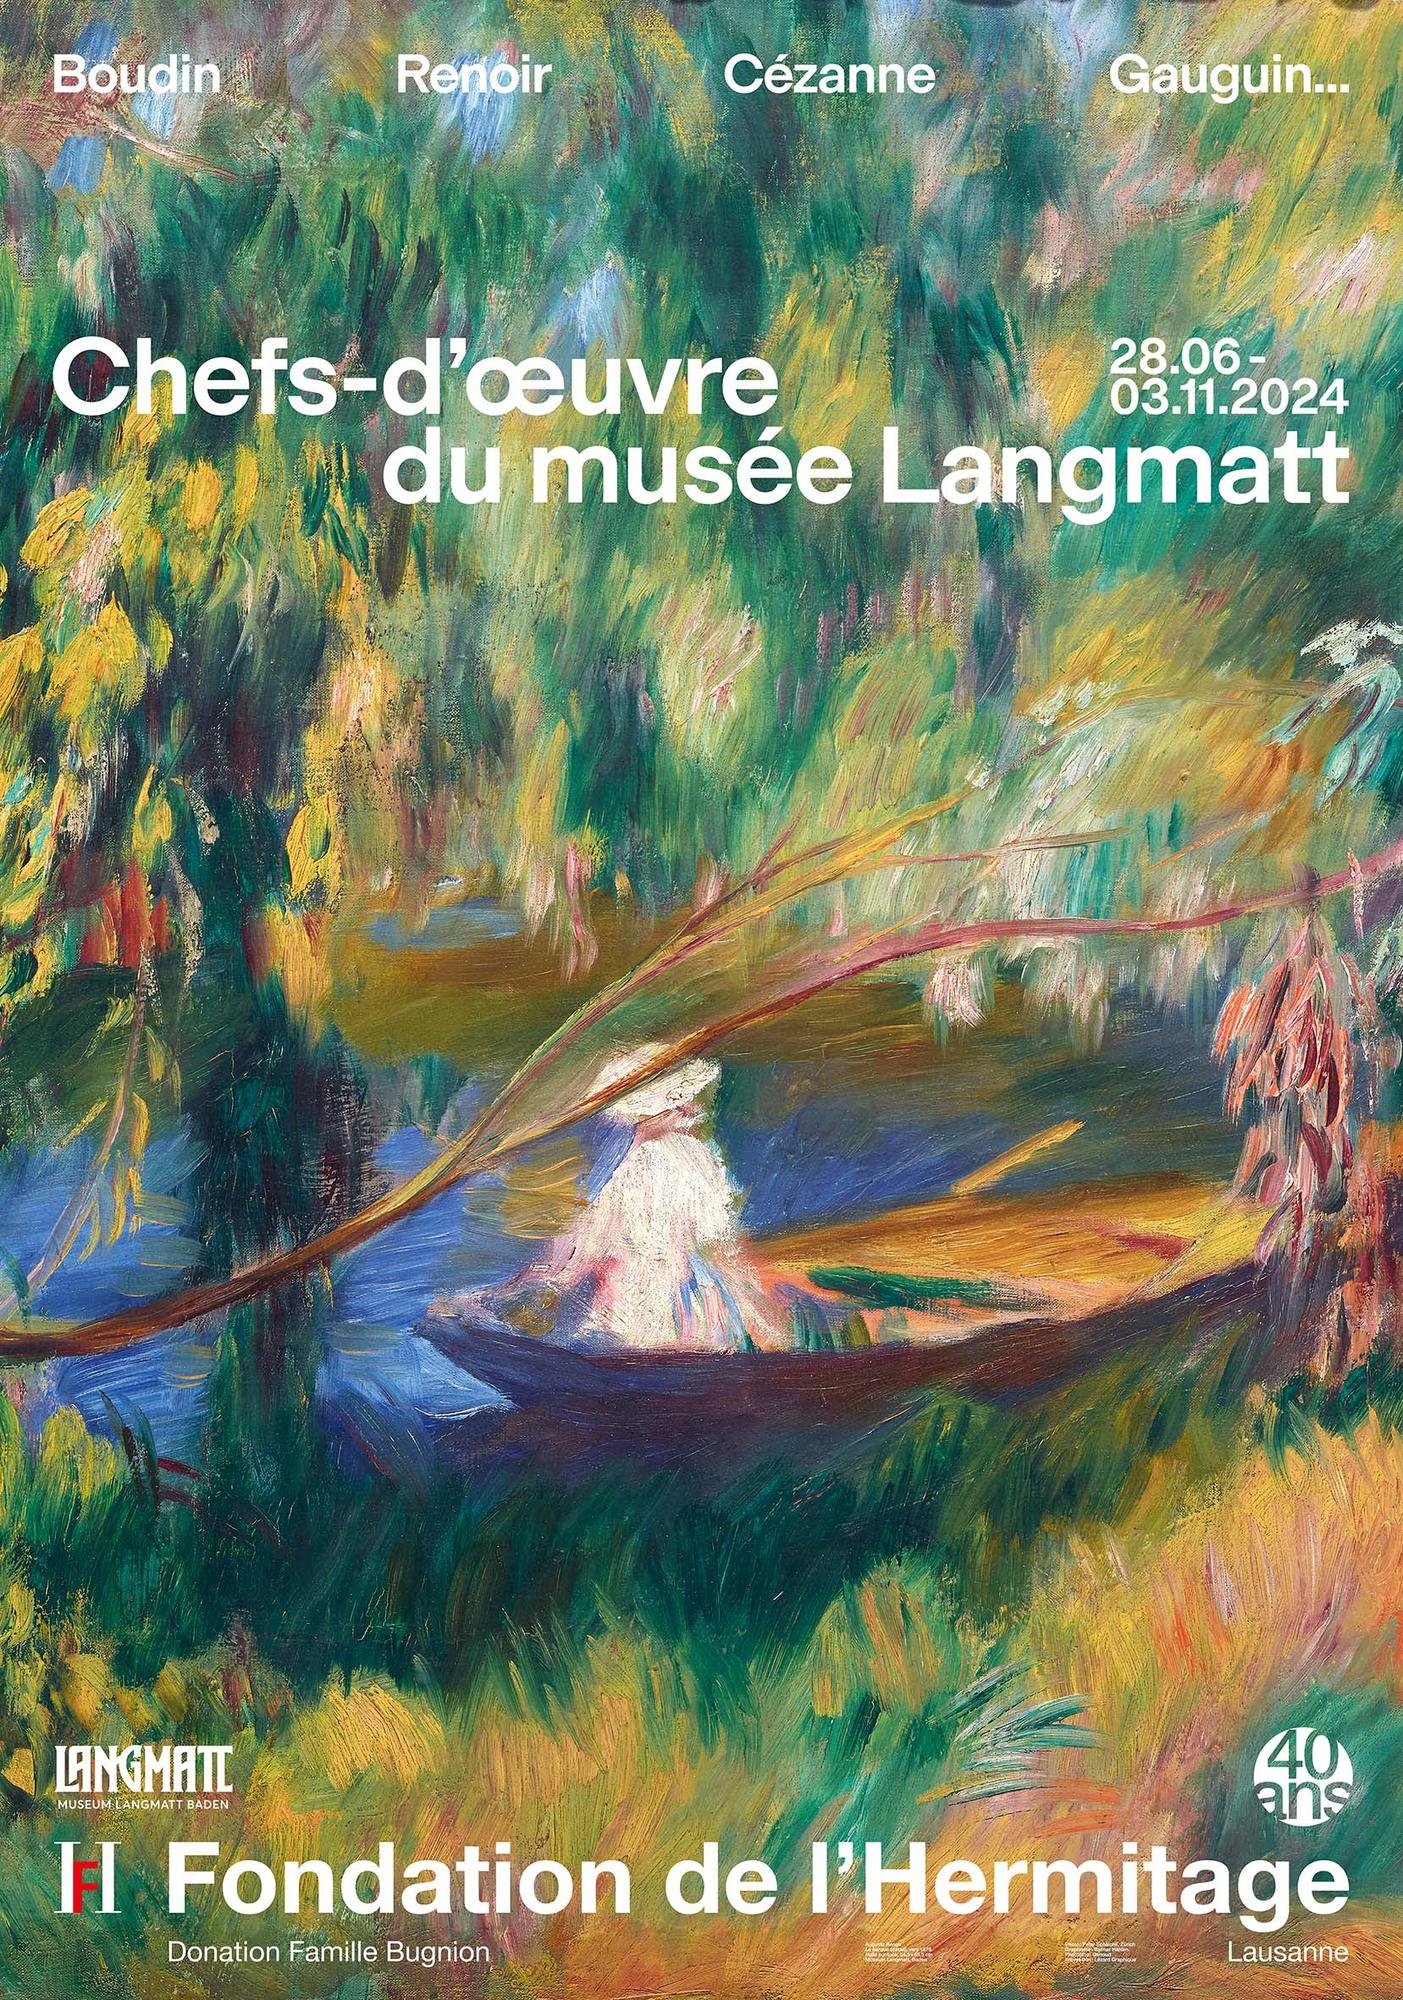 Affiche de l'exposition "Chefs-d'oeuvre du musée Langmatt" à la Fondation de l'Hermitage, à Lausanne. [Fondation de l'Hermitage]